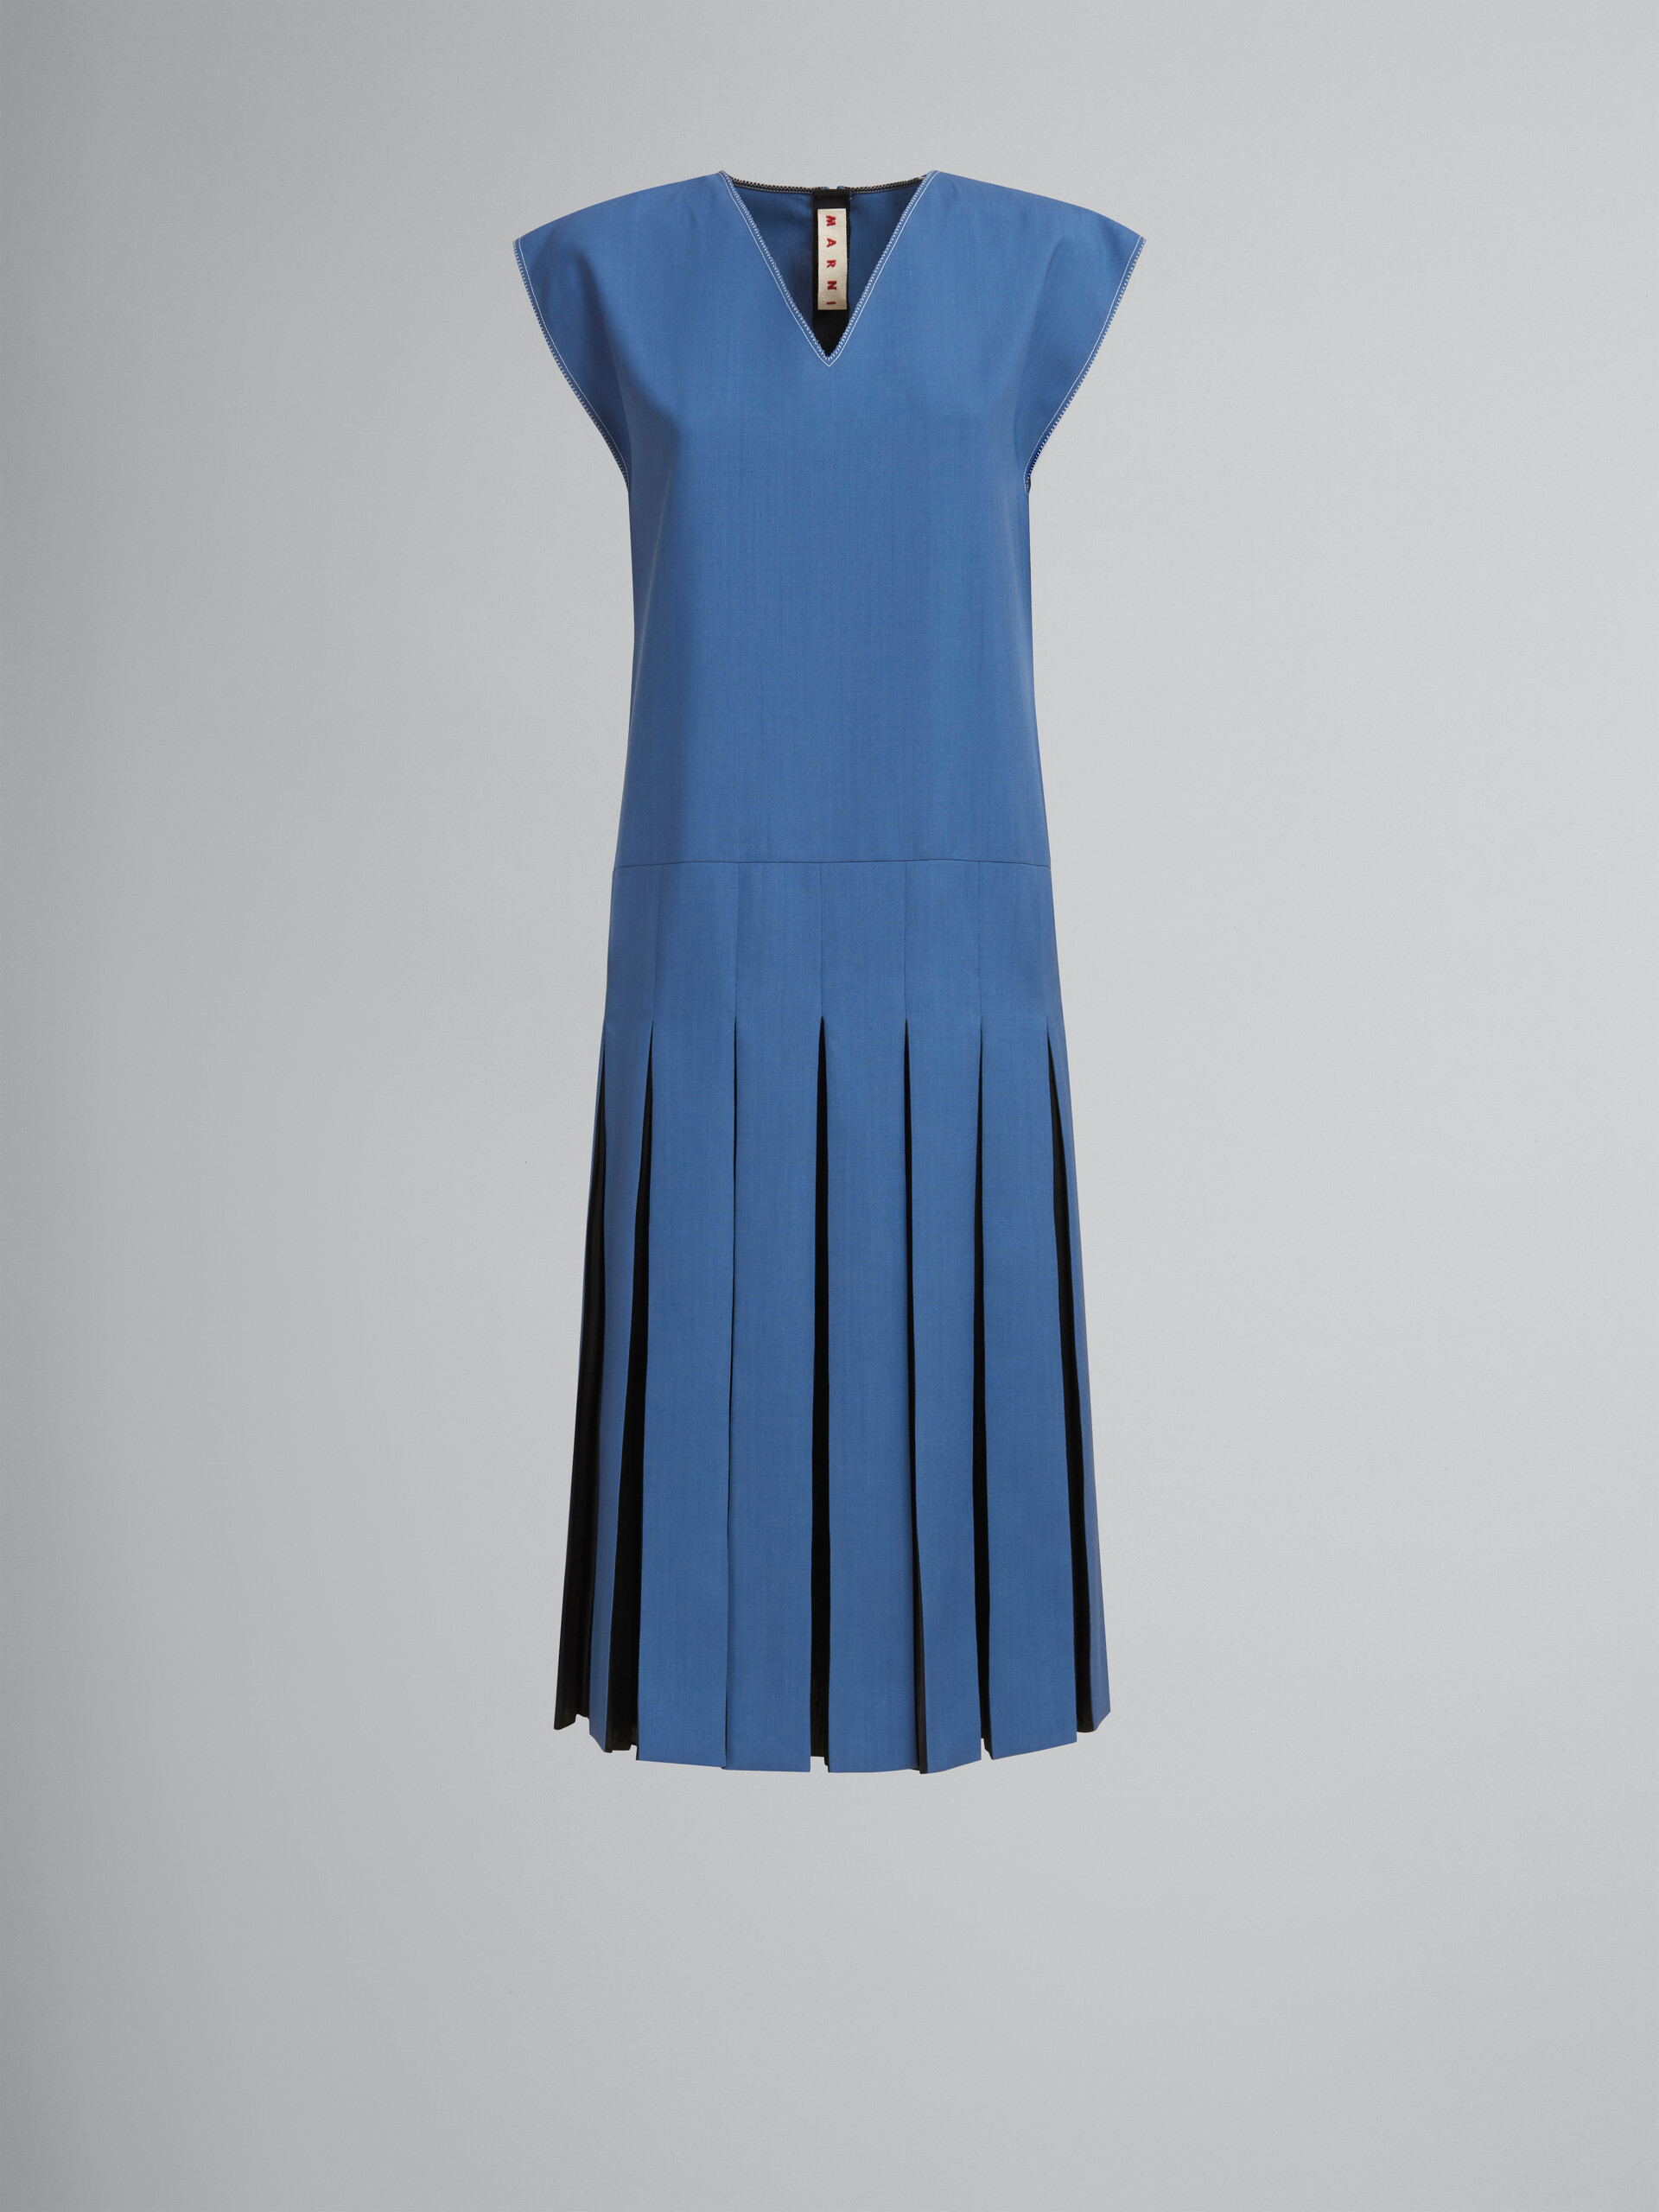 Vestido azul de lana tropical con pliegues en contraste - Vestidos - Image 1